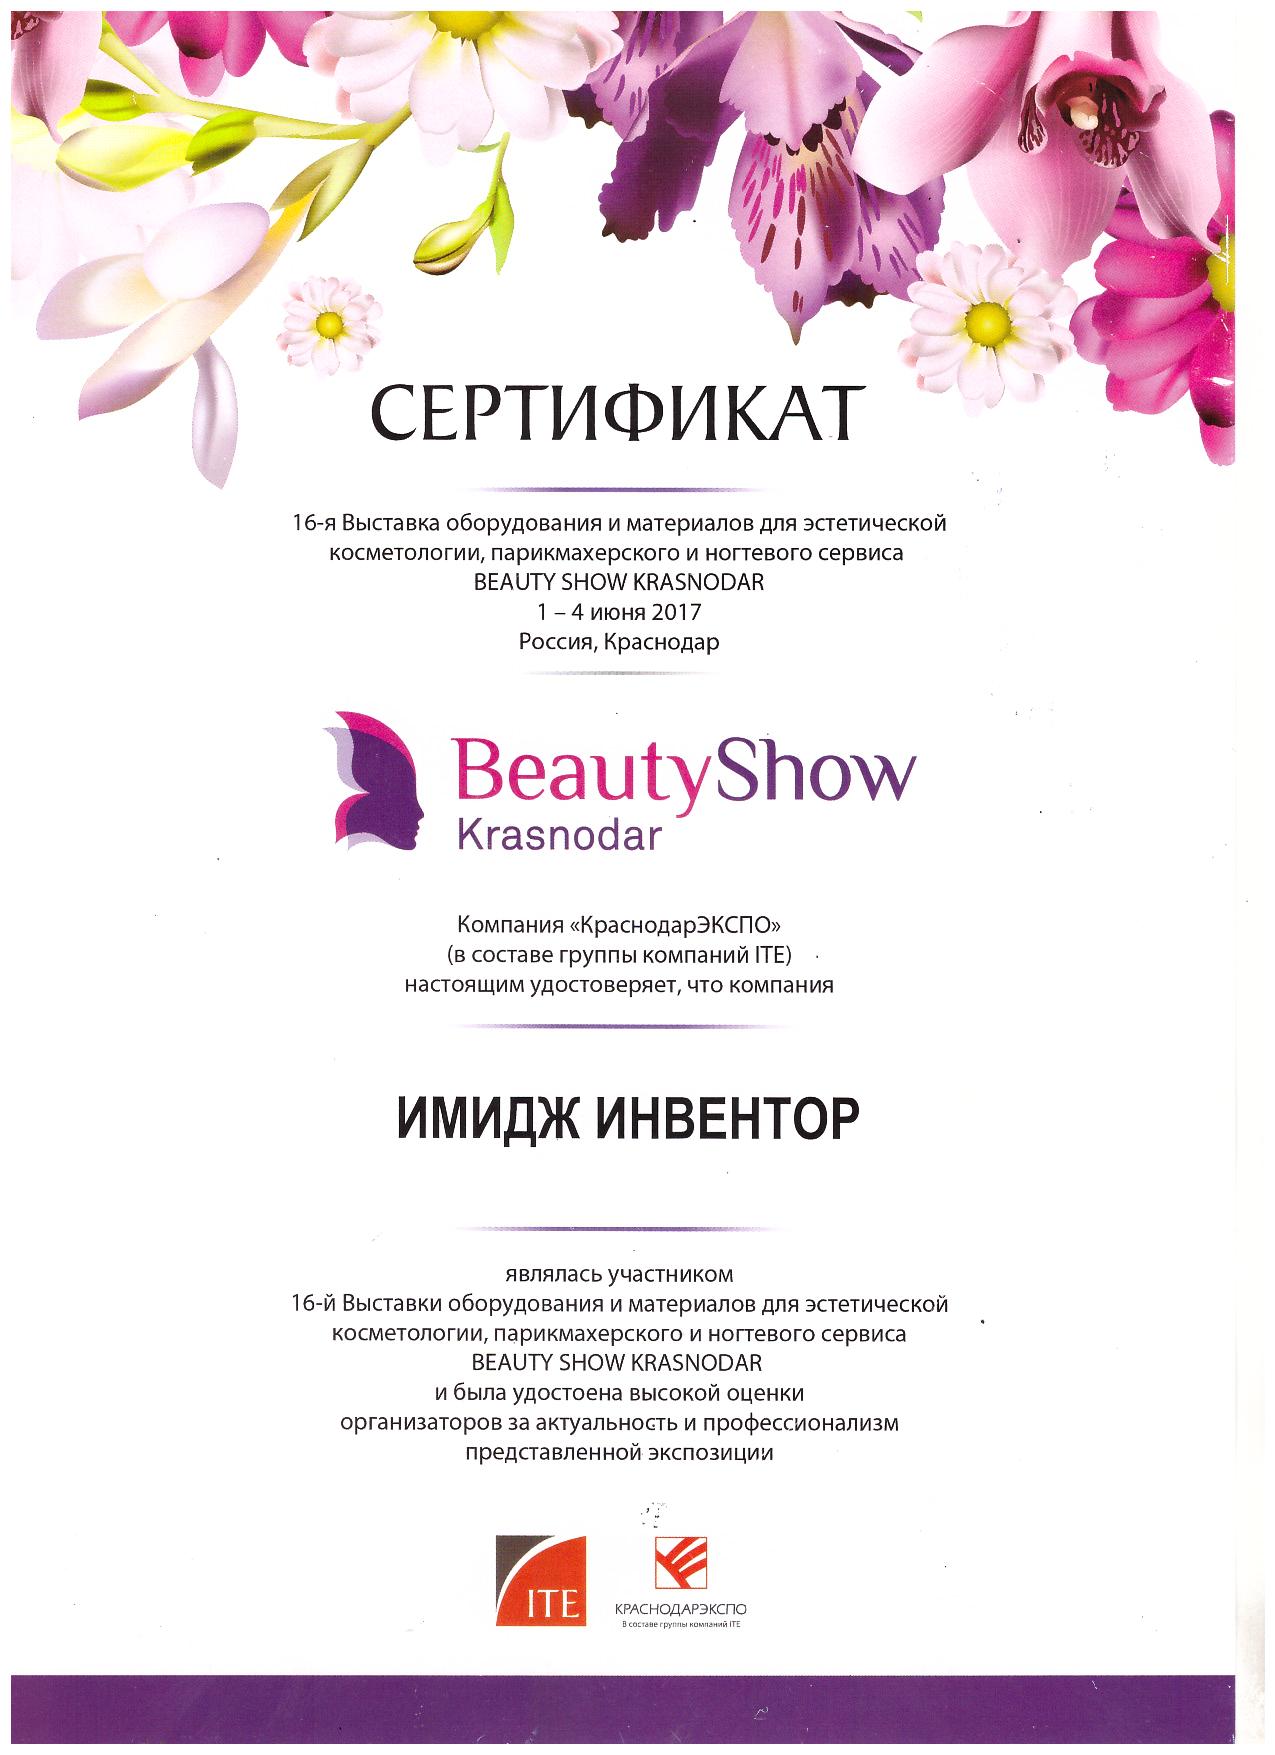 BeautyShow Krasnodar 2017